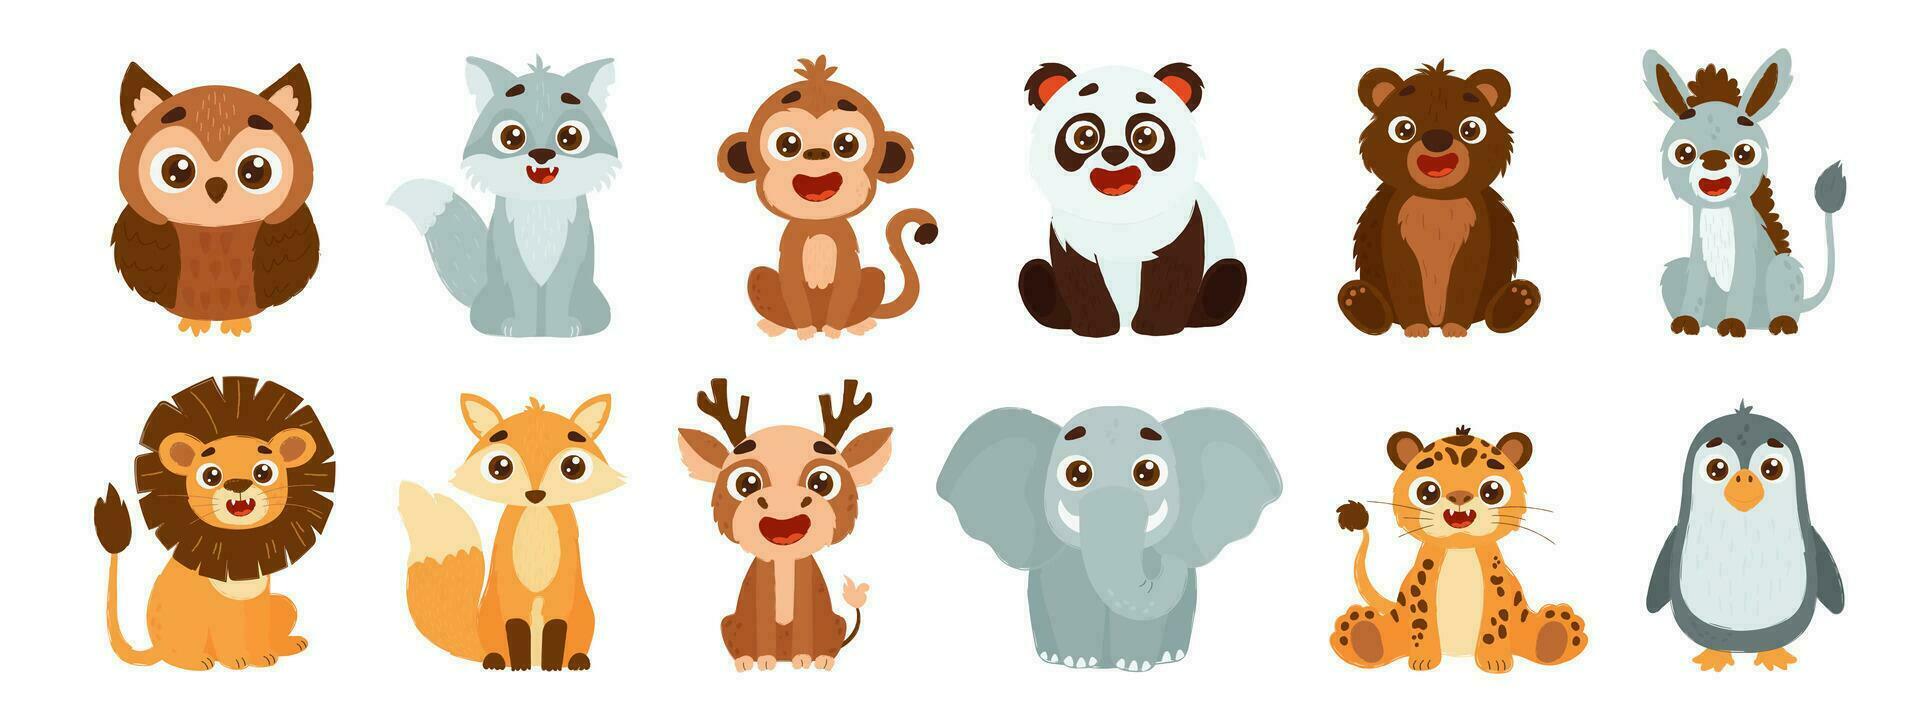 conjunto do fofa selvagem animais Incluindo leão, Raposa, cervo, elefante, tigre, pinguim, coruja, lobo, macaco, panda, Urso e burro. vetor crianças estilo ilustração do floresta animais.